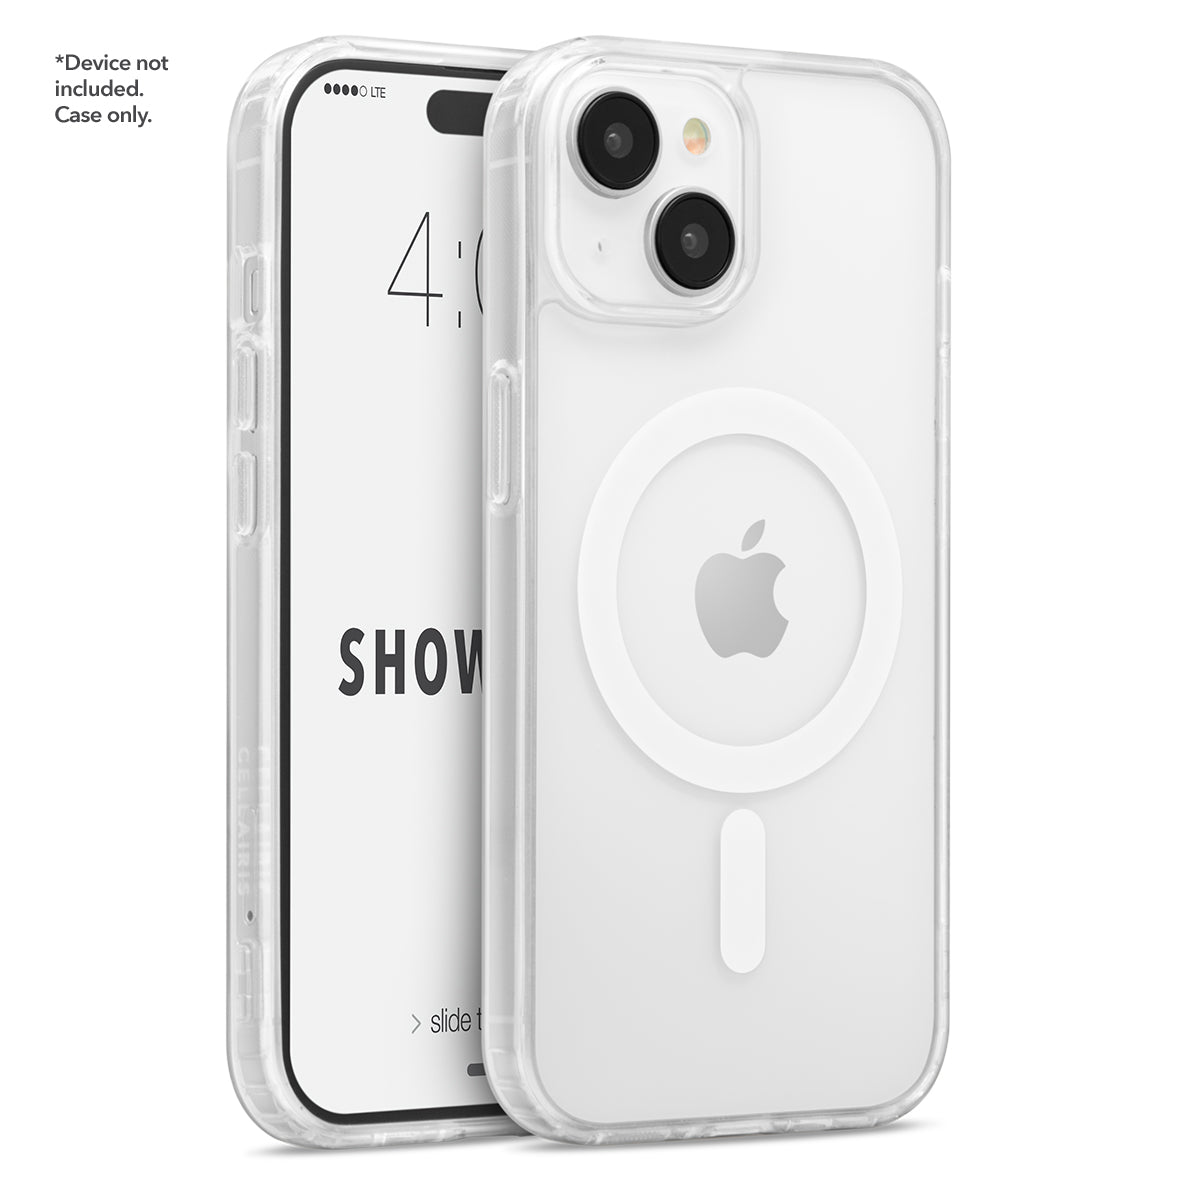 Showcase Slim Halo - iPhone 15/ 14/ 13 White w/ MagSafe Cases